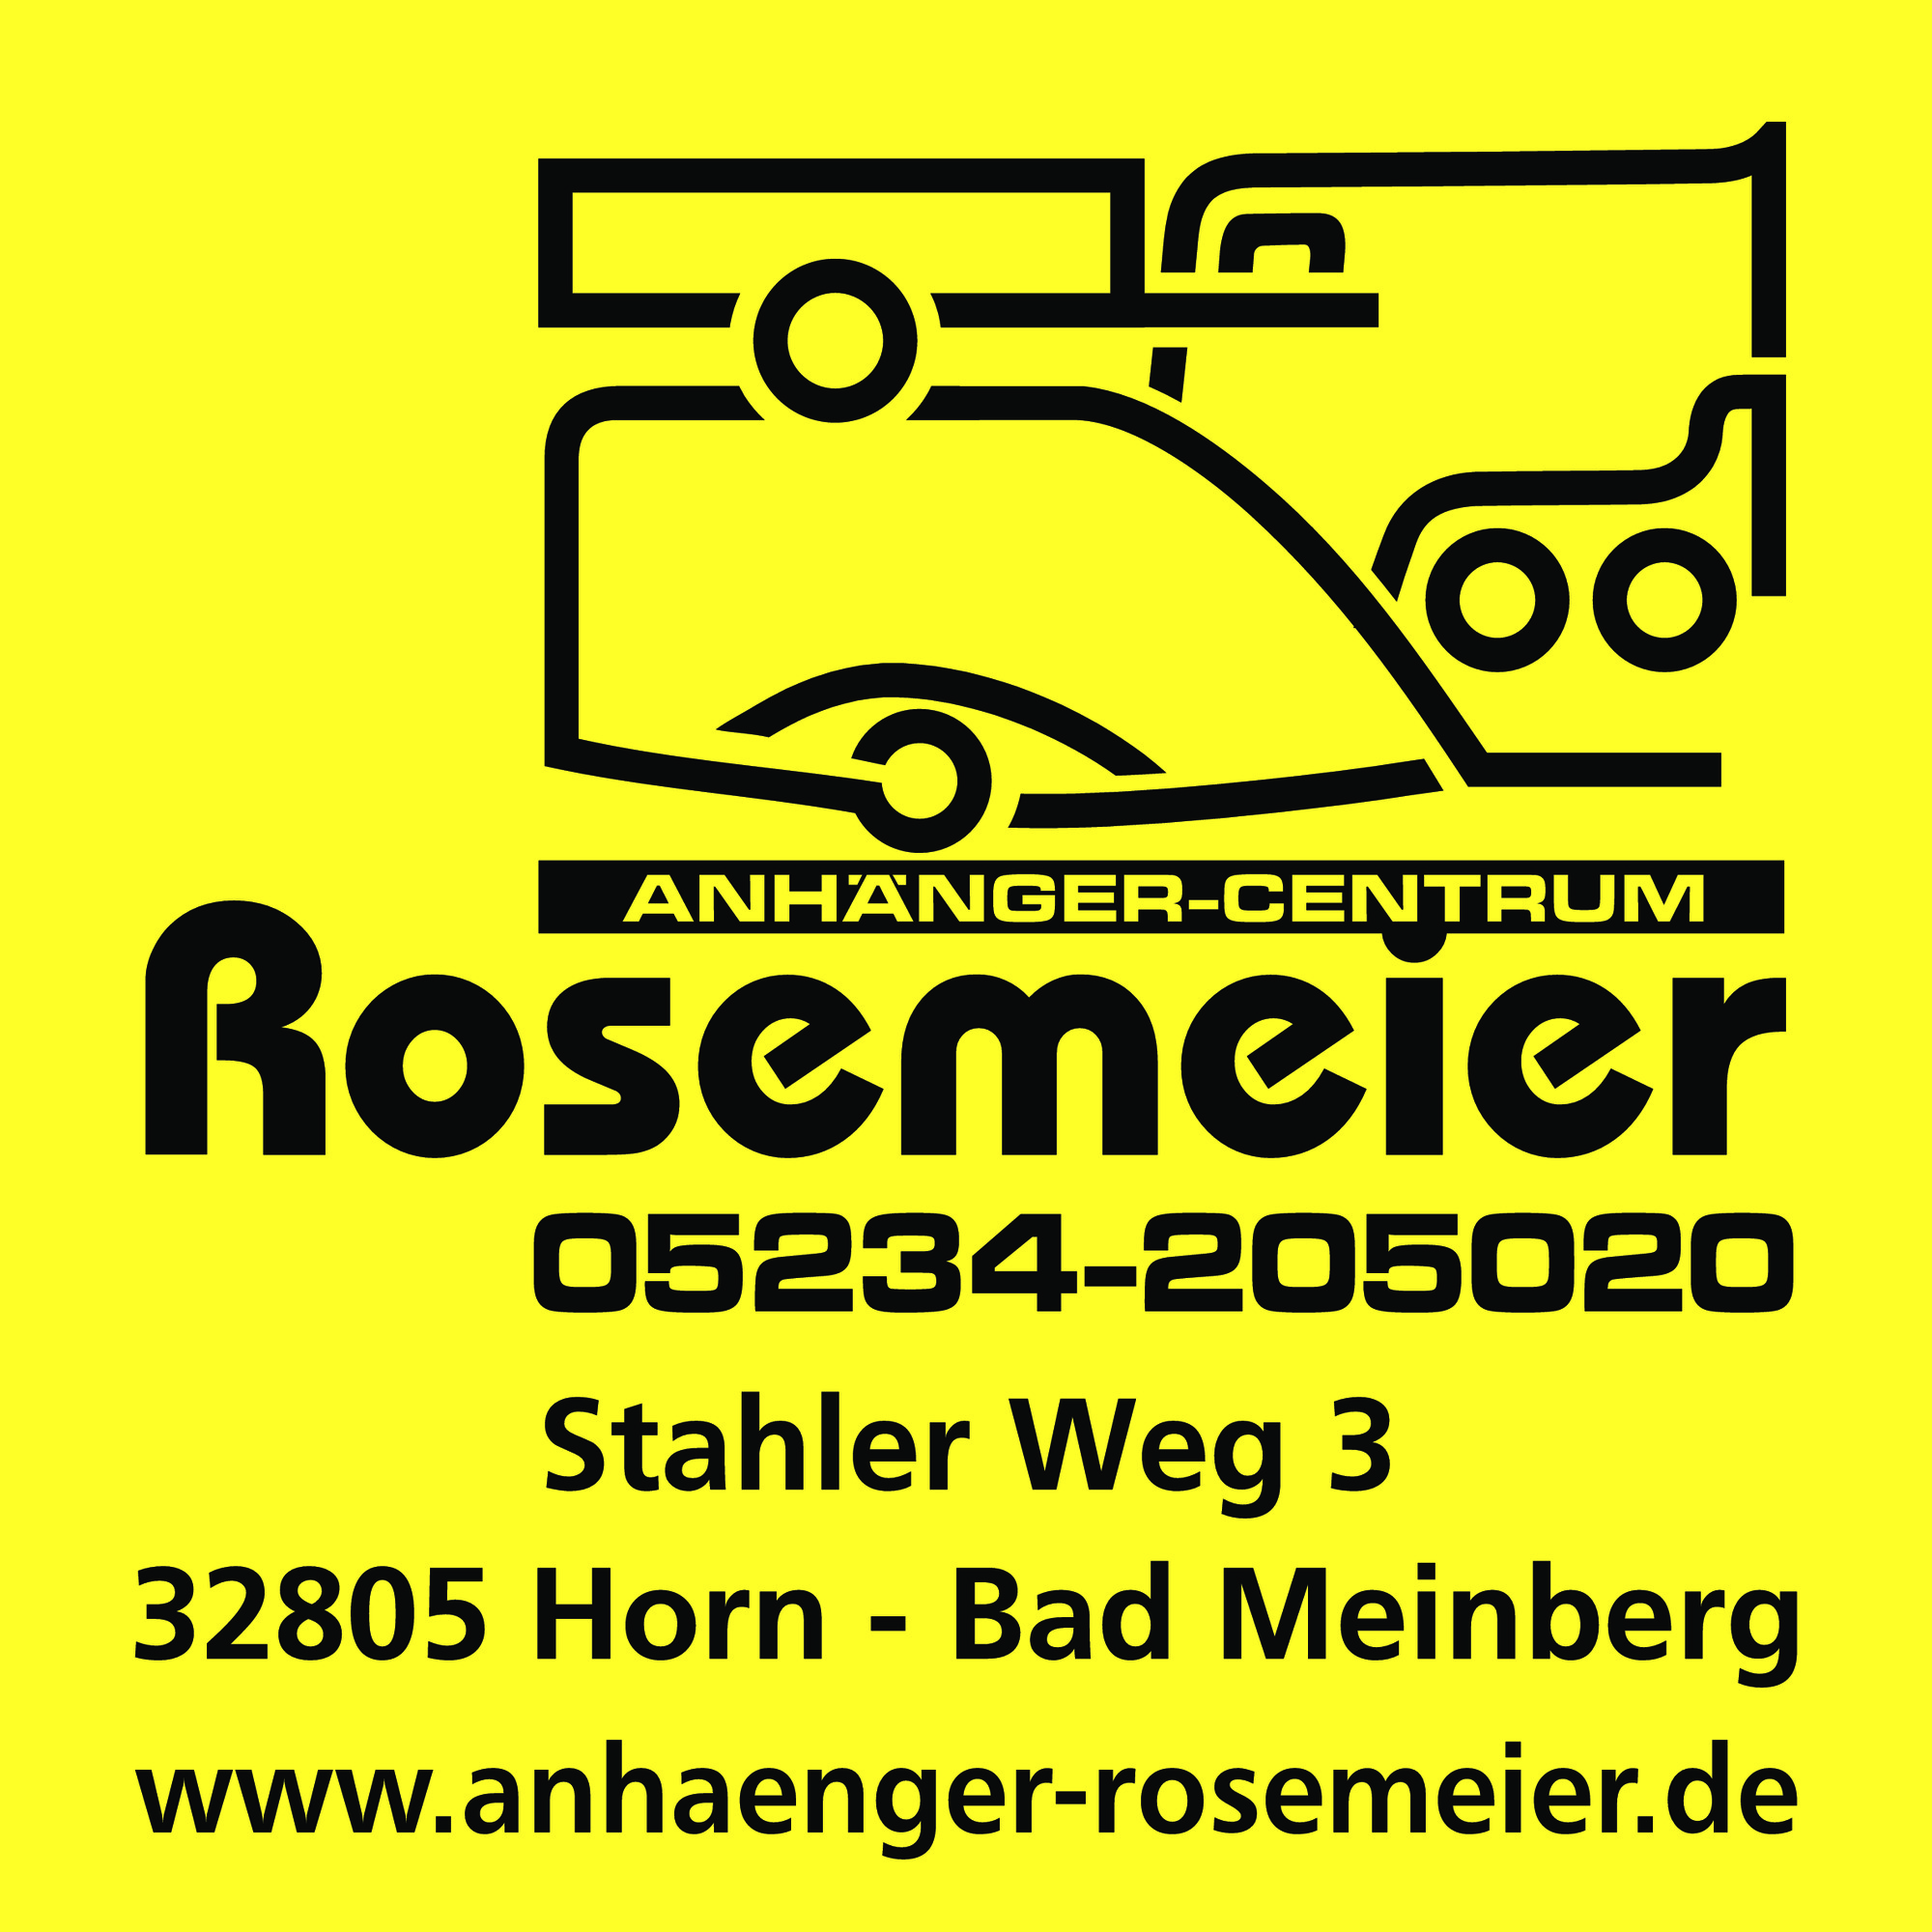 Rosemeier GmbH Anhaenger-Centrum - Remorques - 3-essieu undefined: photos 1